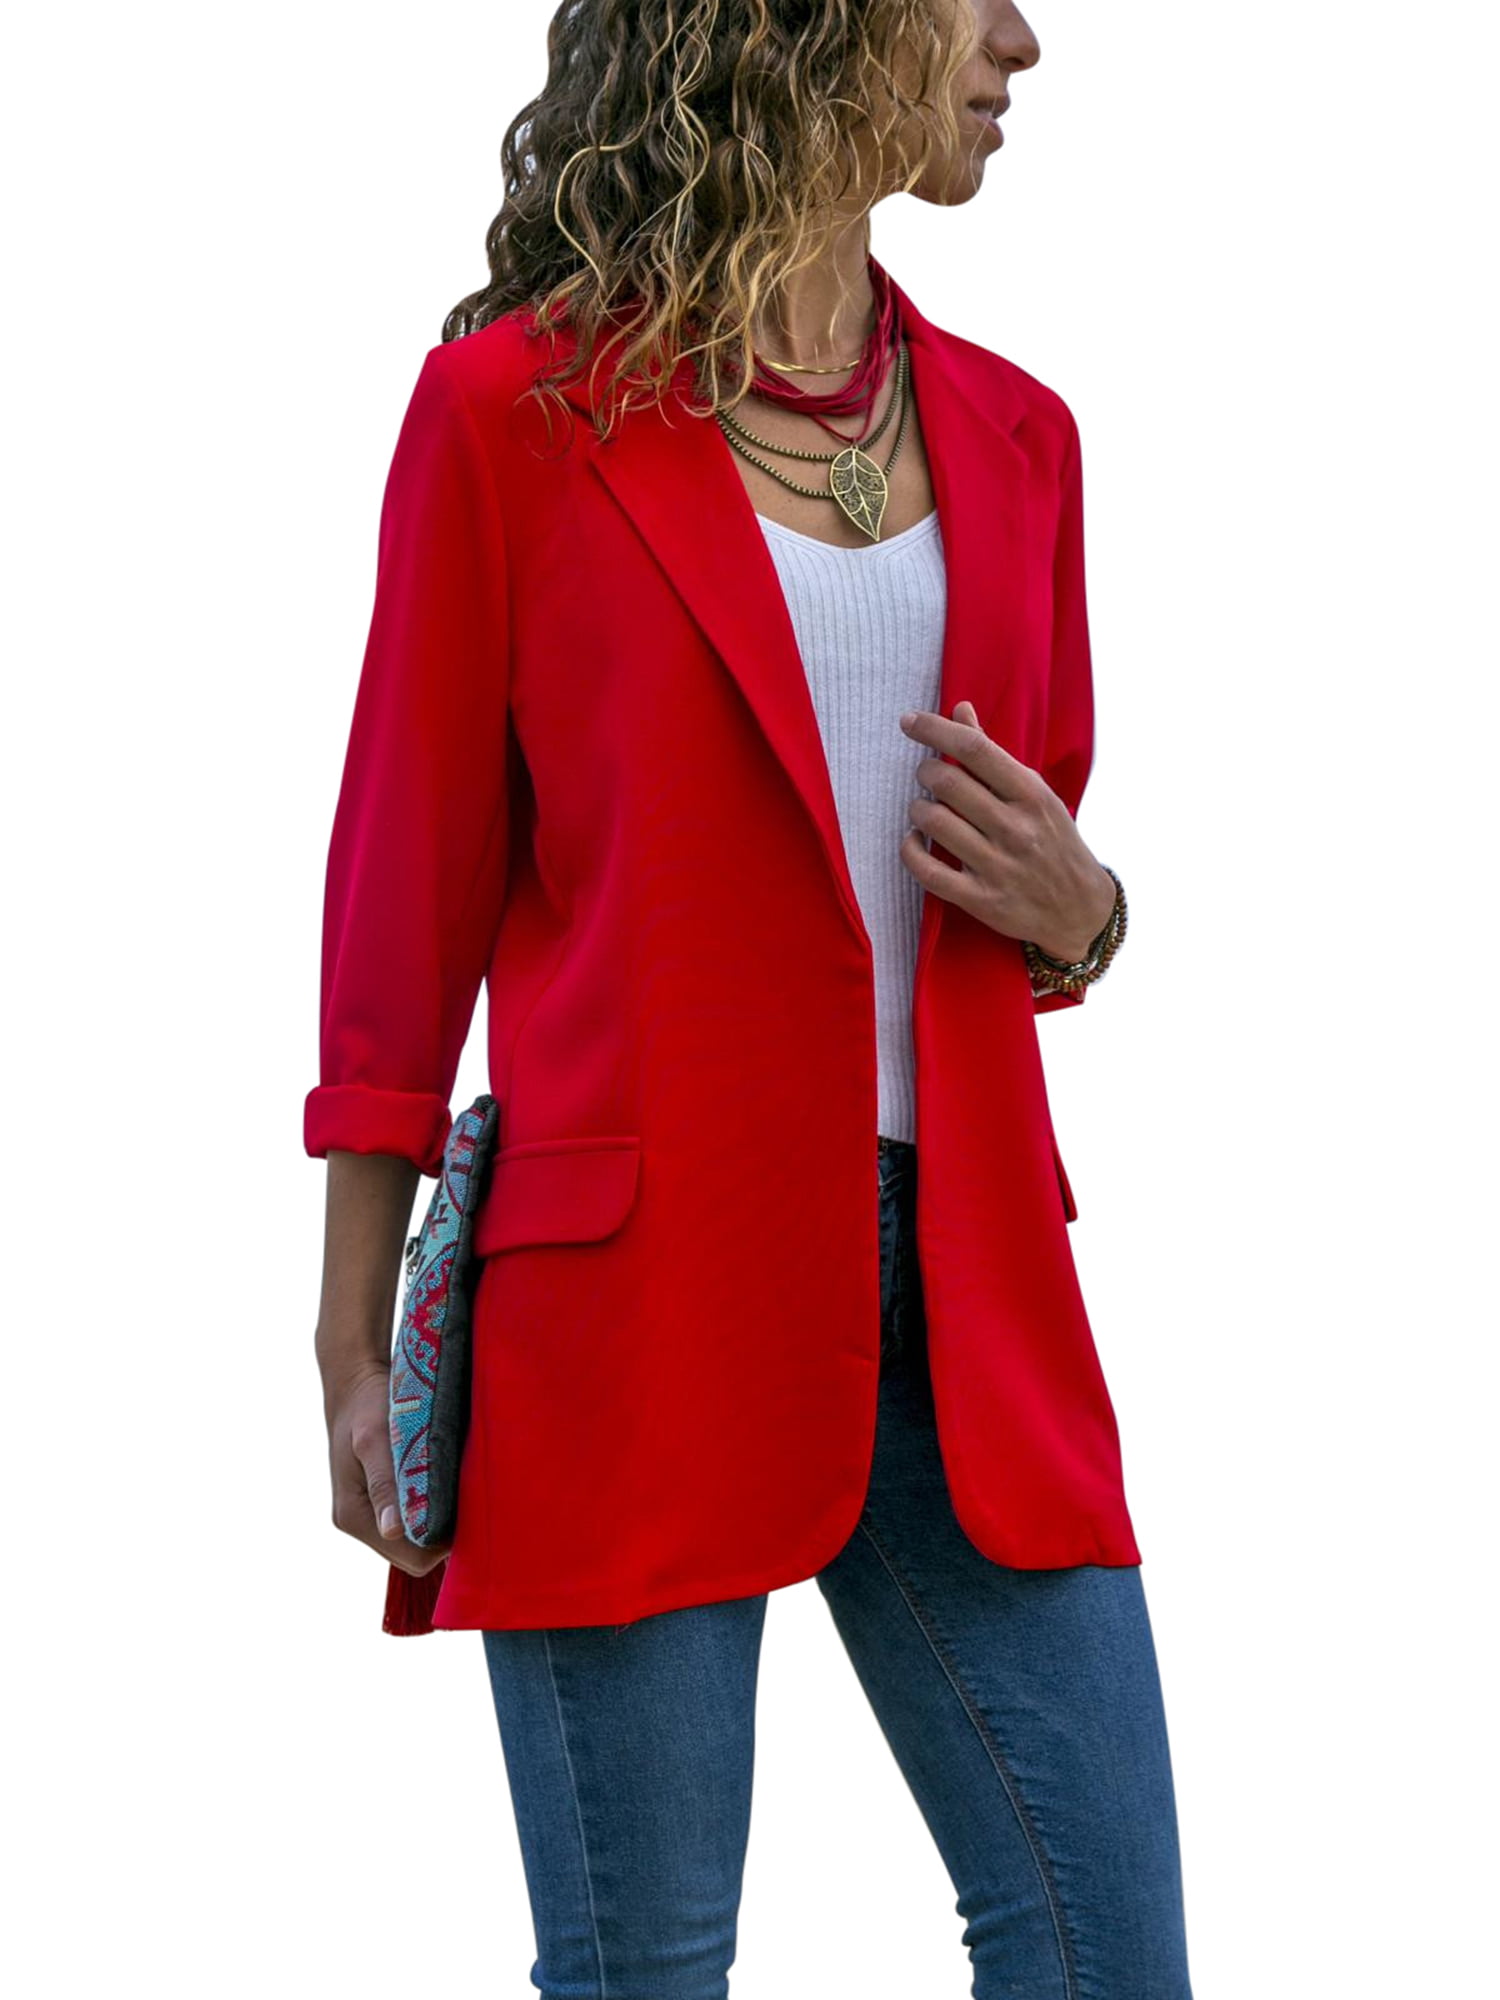 Sebaby Women Long Sleeve Open Outwear Pure Color Blazer Suit Coat Tops 